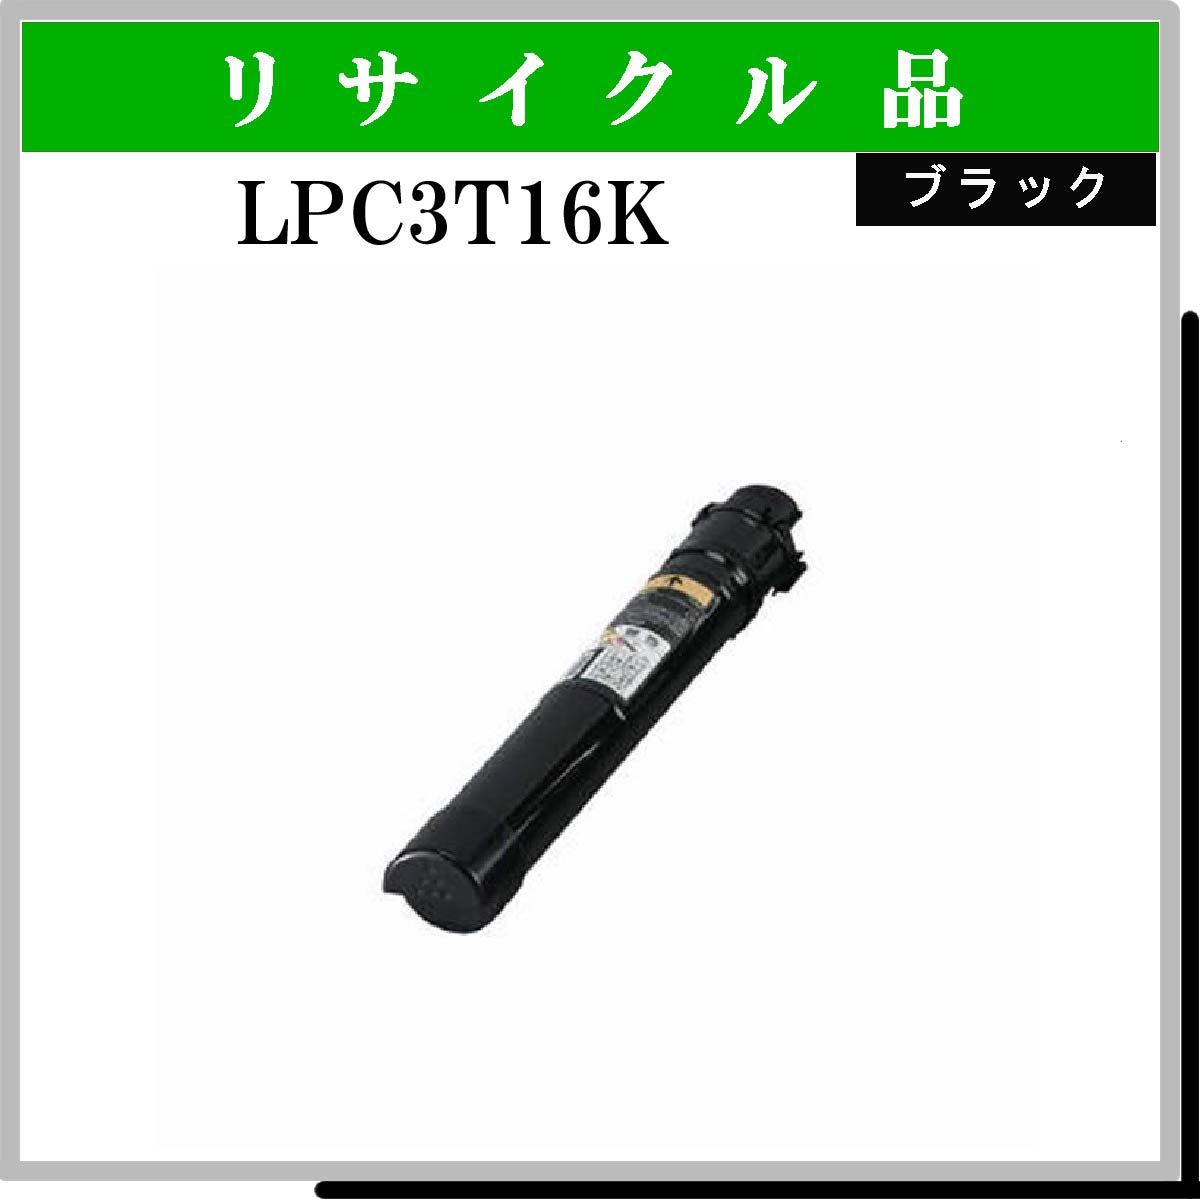 LPC3T16K